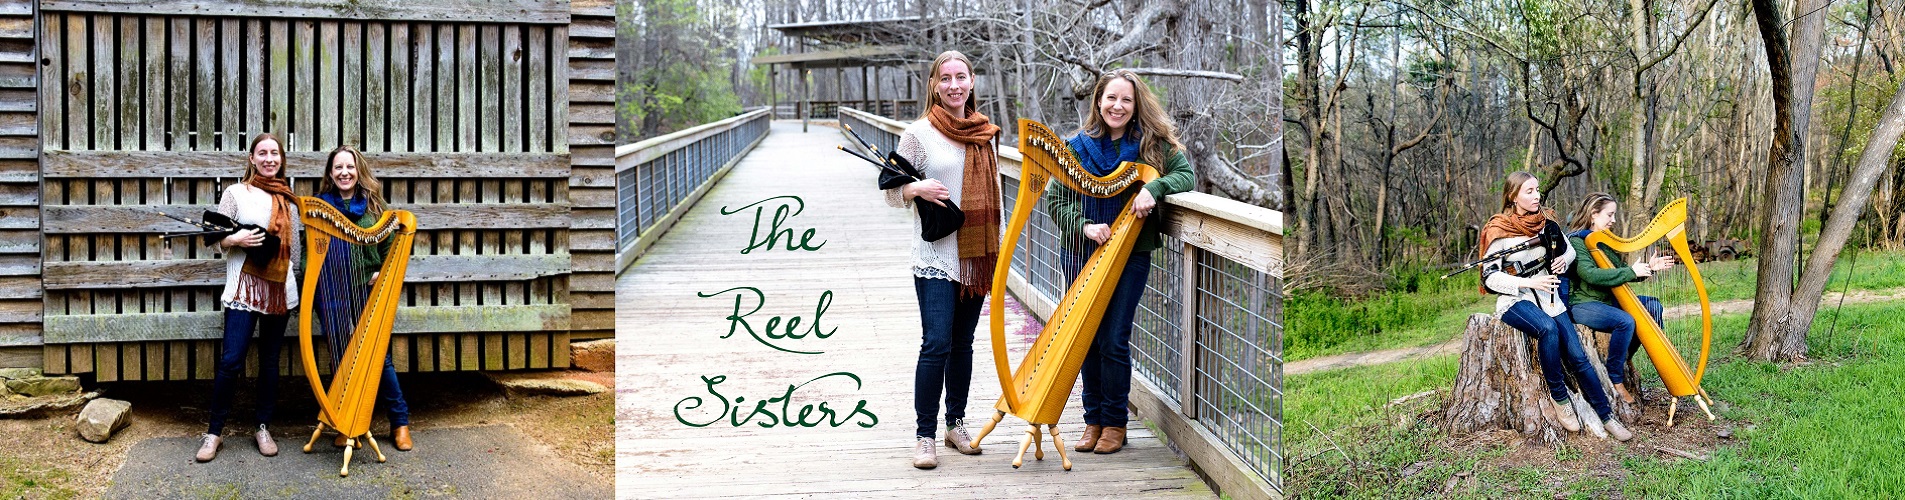 The Reel Sisters